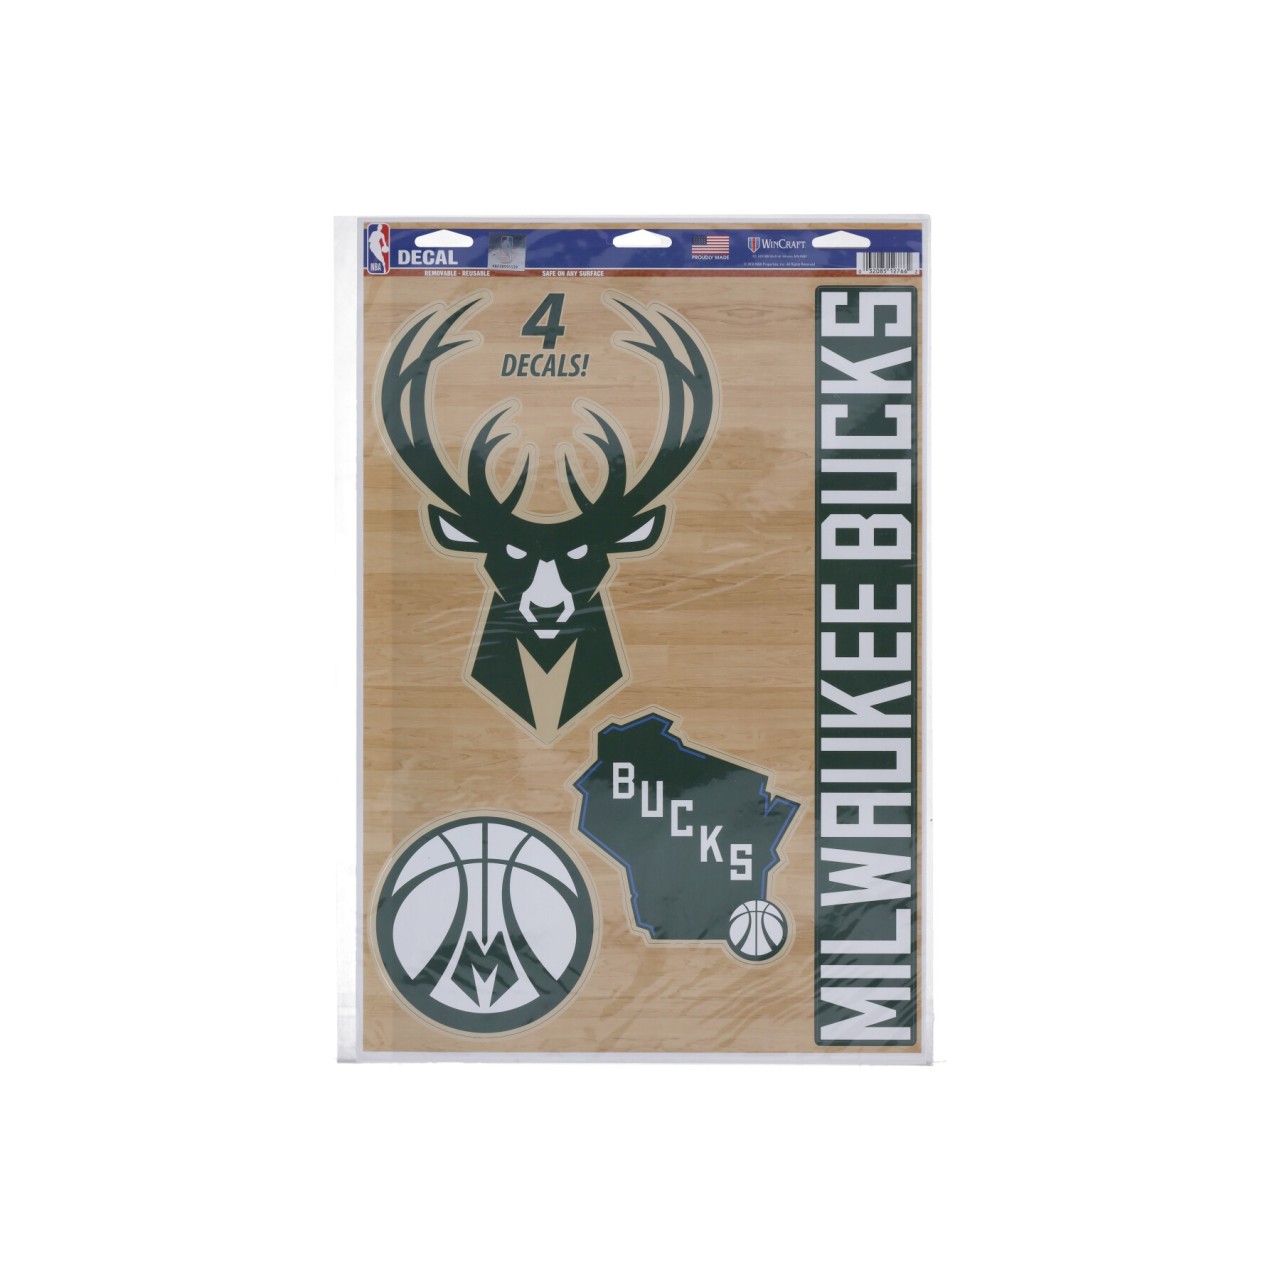 WINCRAFT NBA 11 x 17” MULTI-USE DECAL SHEET MILBUC 12766115